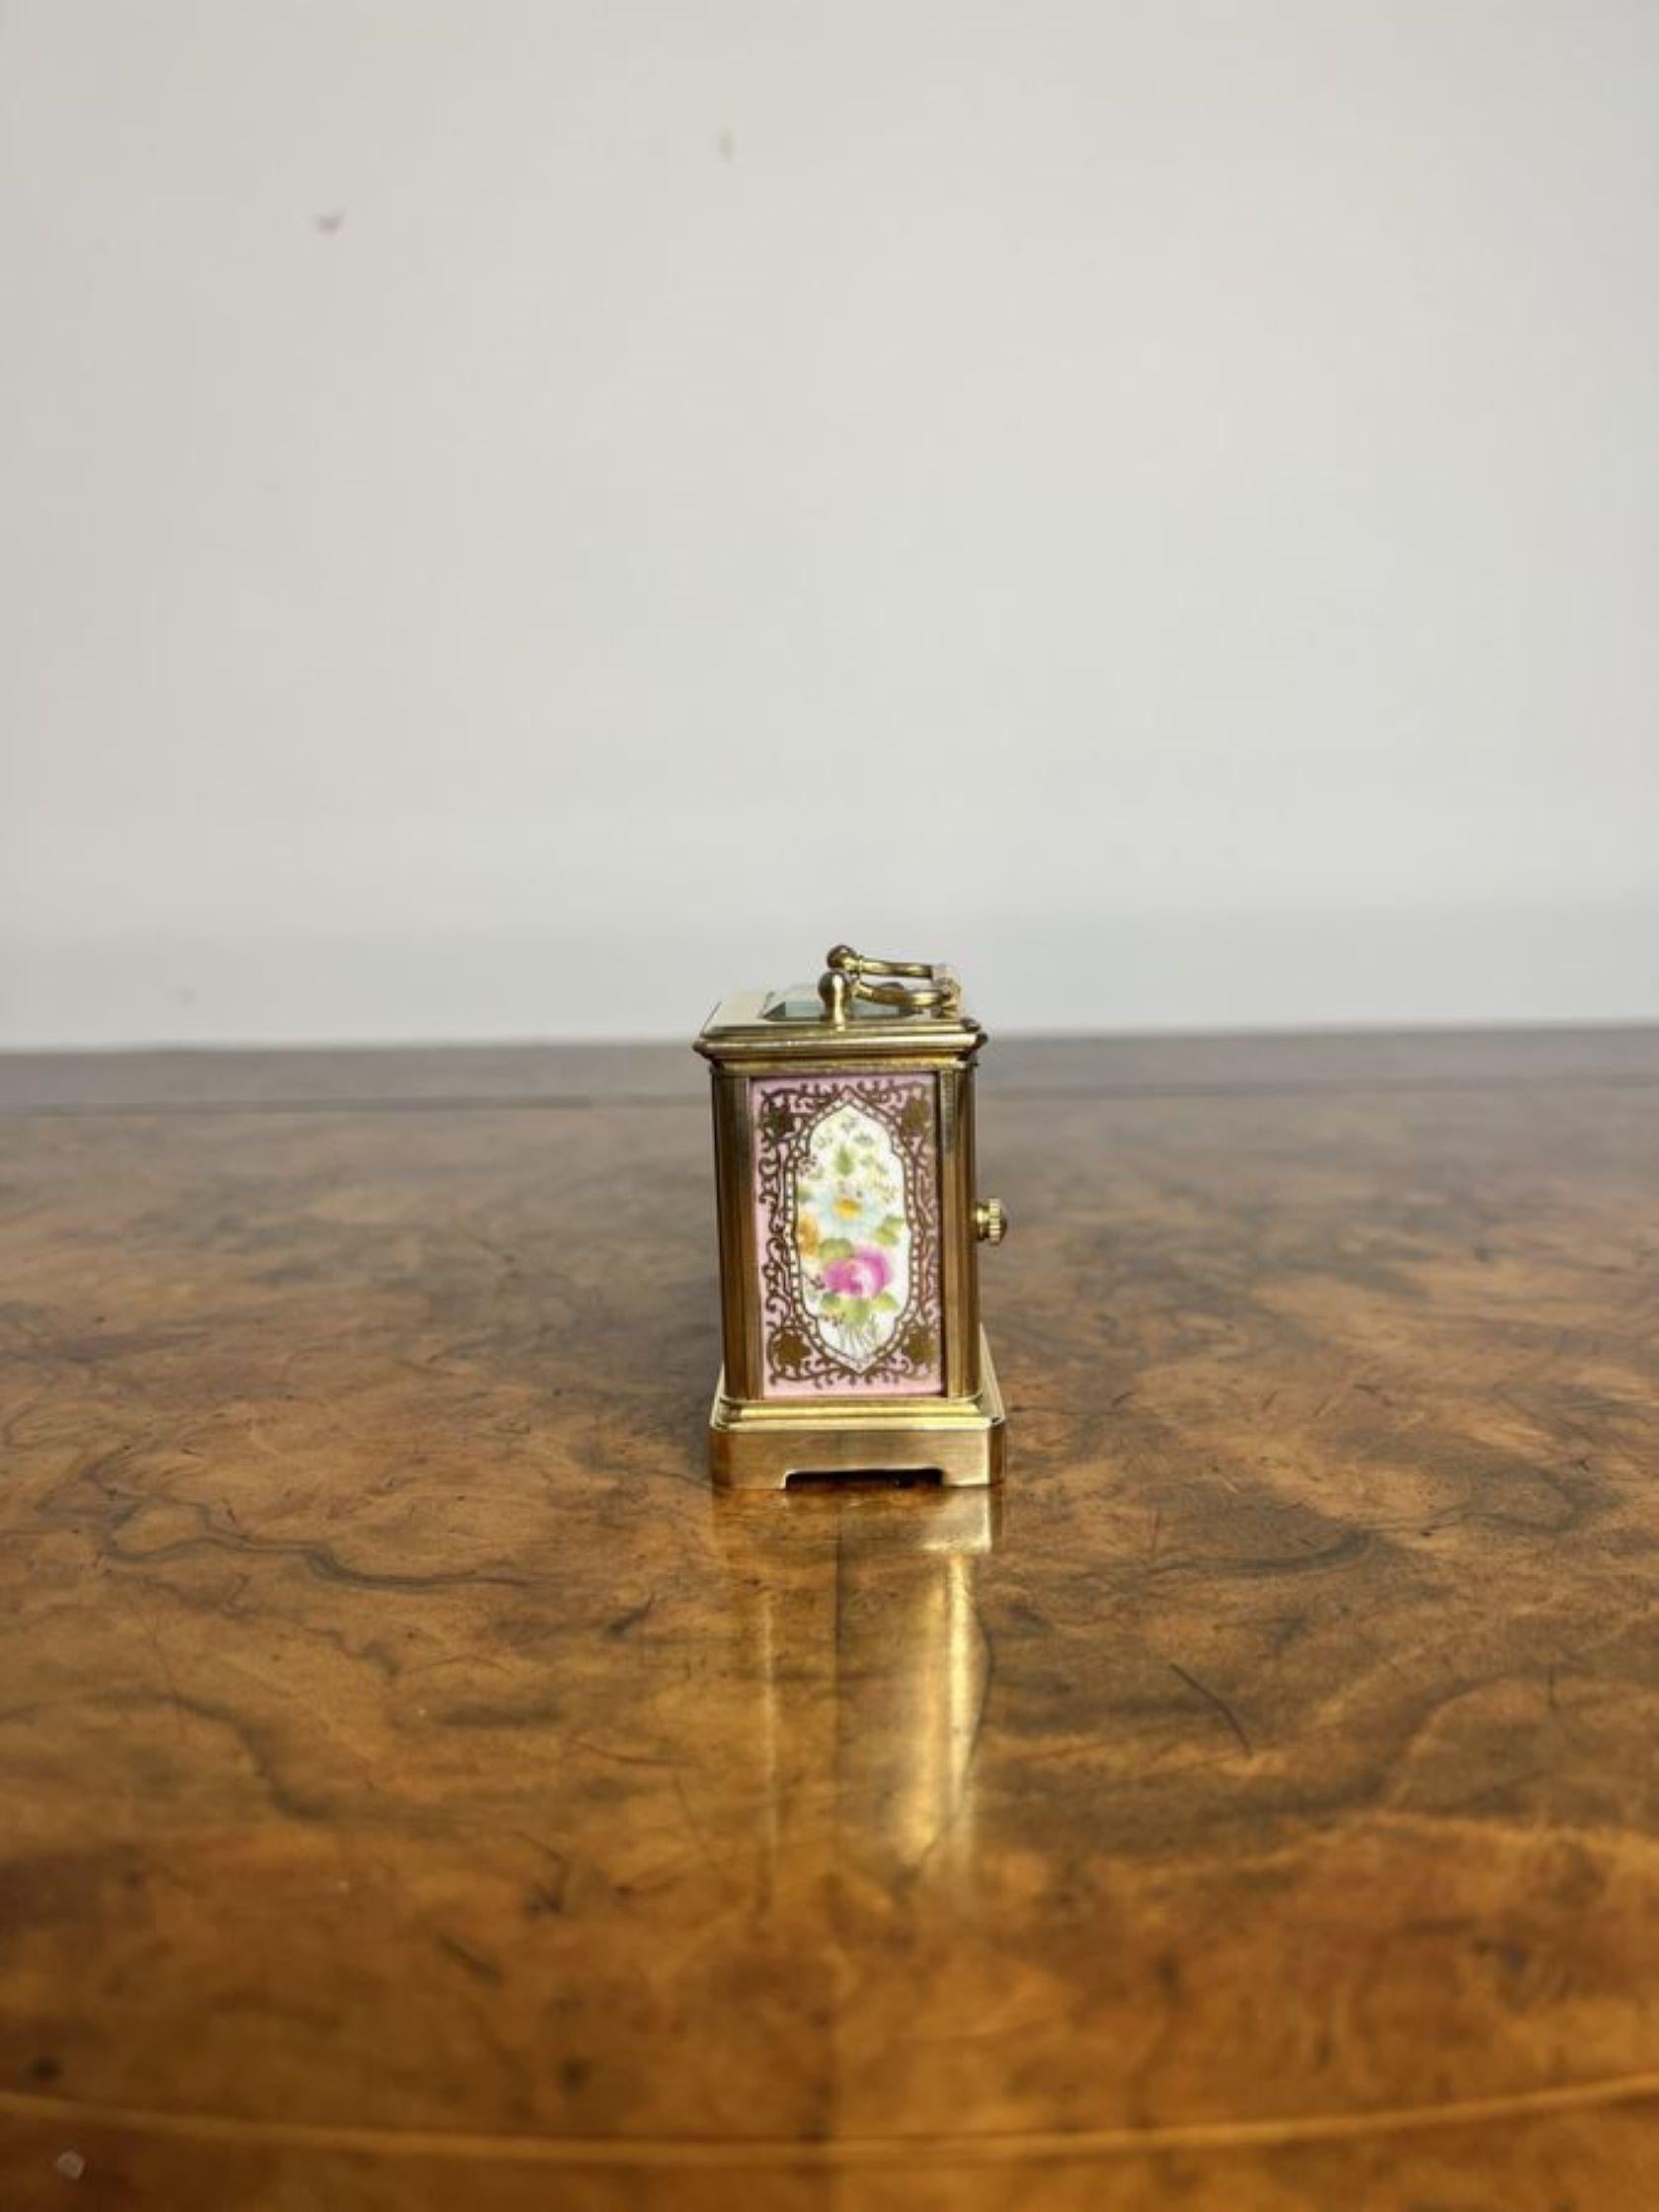 Atemberaubende antike Edwardian Qualität Miniatur Kutsche Uhr mit einem hochwertigen Messing-Gehäuse mit schönen handbemalten Porzellan-Panels mit Blumen in rosa, grünen und gelben Farben von Gold Schnecken umgeben, mit einem 8 Tage Französisch